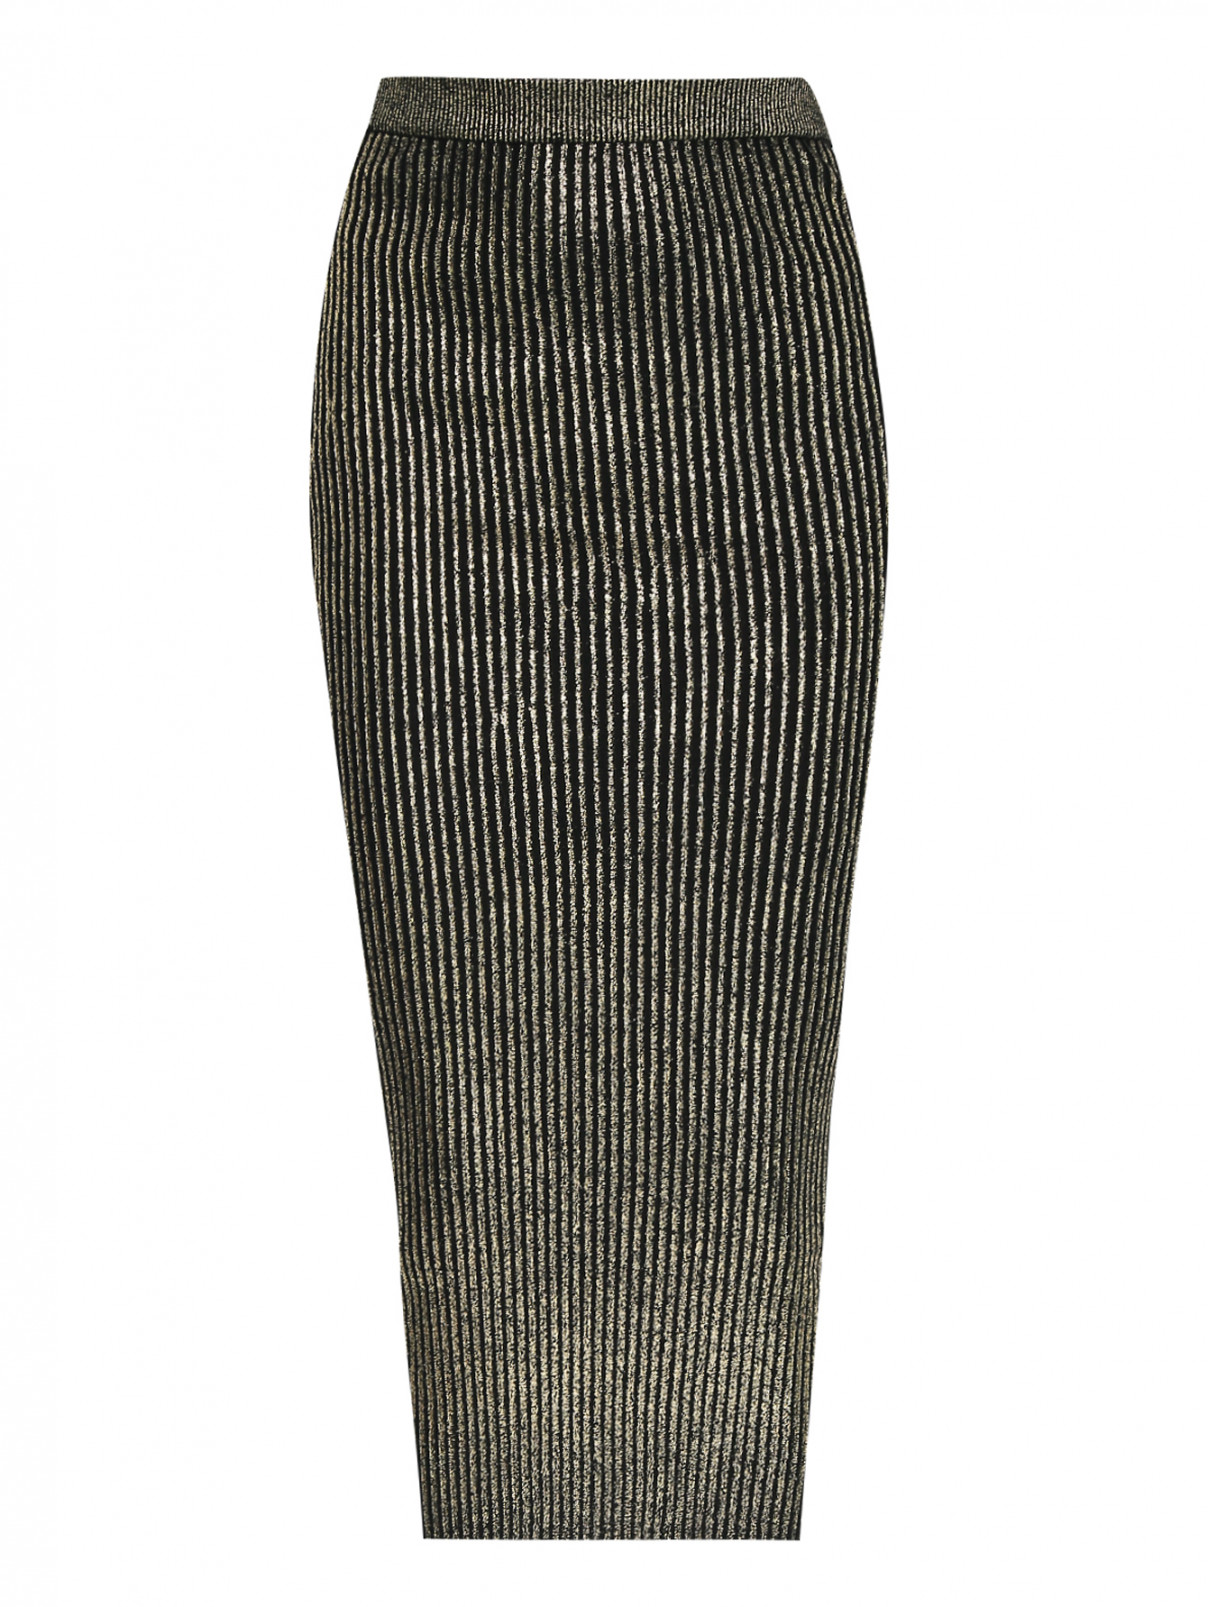 Юбка-резинка из шерсти с напылением металлик Isola Marras  –  Общий вид  – Цвет:  Золотой